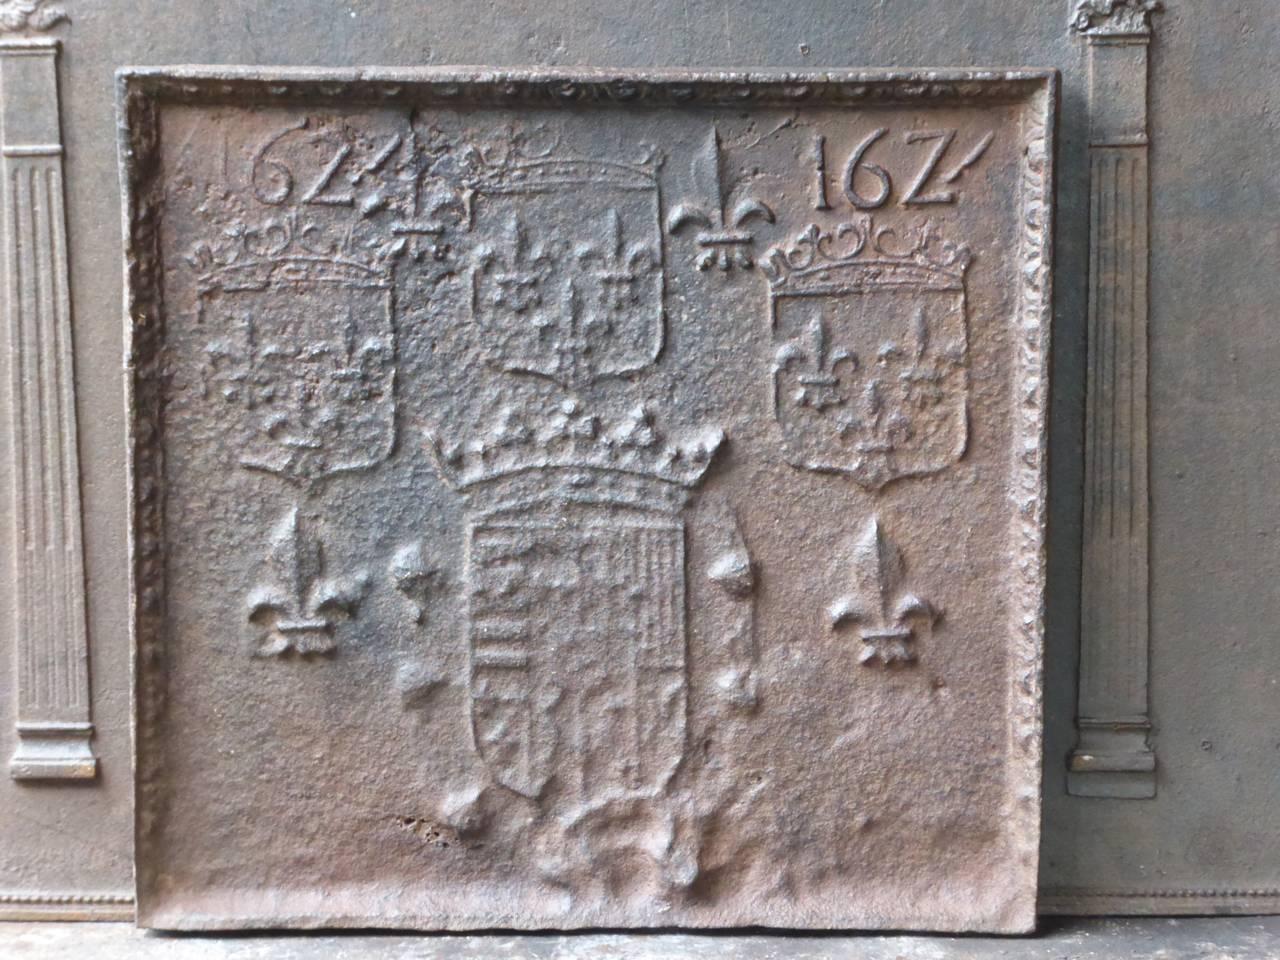 Französischer Kaminboden mit mehreren Wappen Frankreichs und Fleurs de Lys (französische Lilien). Das Herstellungsdatum der Feuerschale, 1624, ist ebenfalls in die Feuerschale eingegossen.

Die Feuerrückwand ist aus Gusseisen und hat eine natürliche